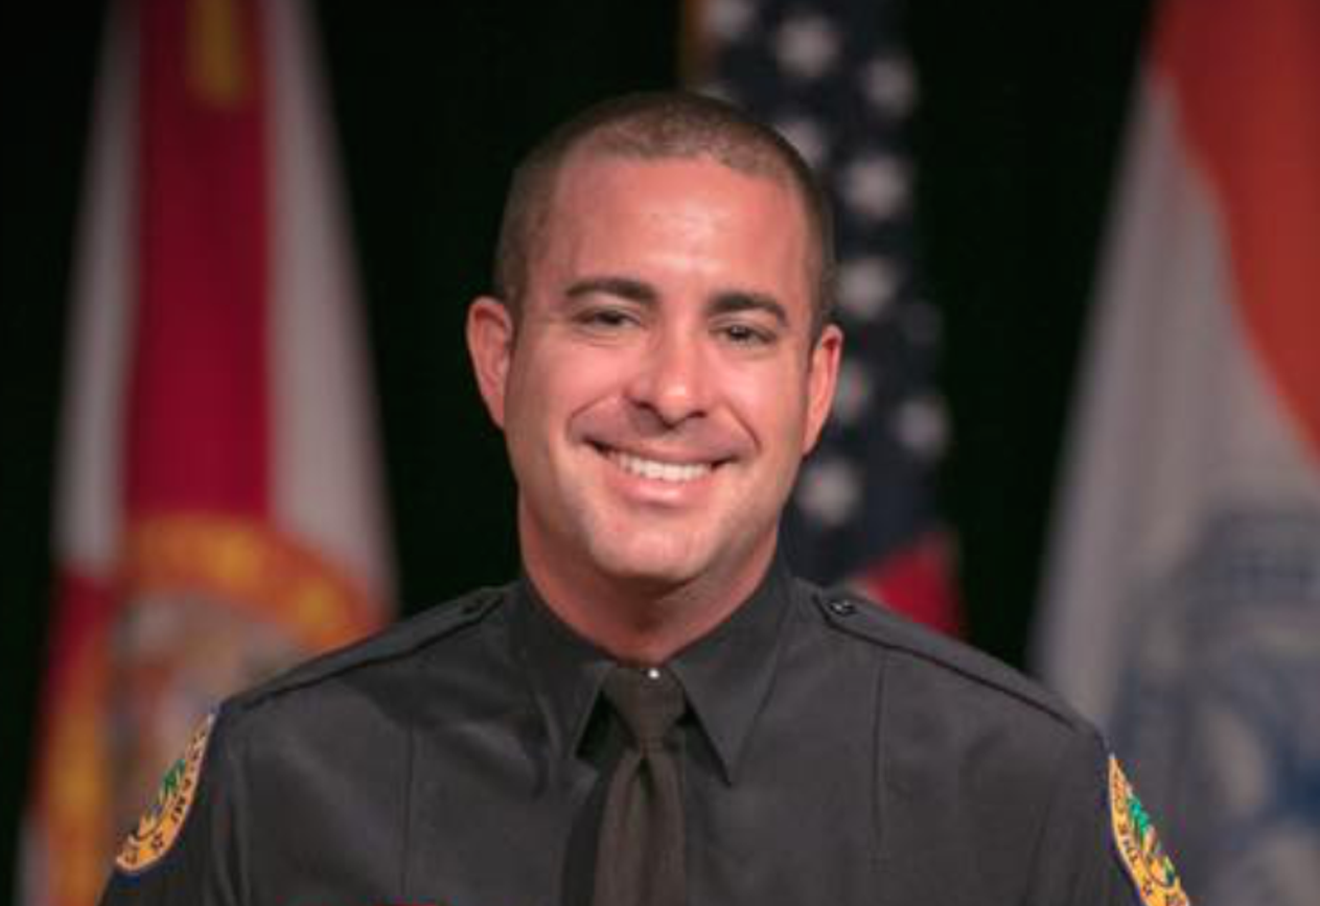 Miami Police Capt. Javier Ortiz